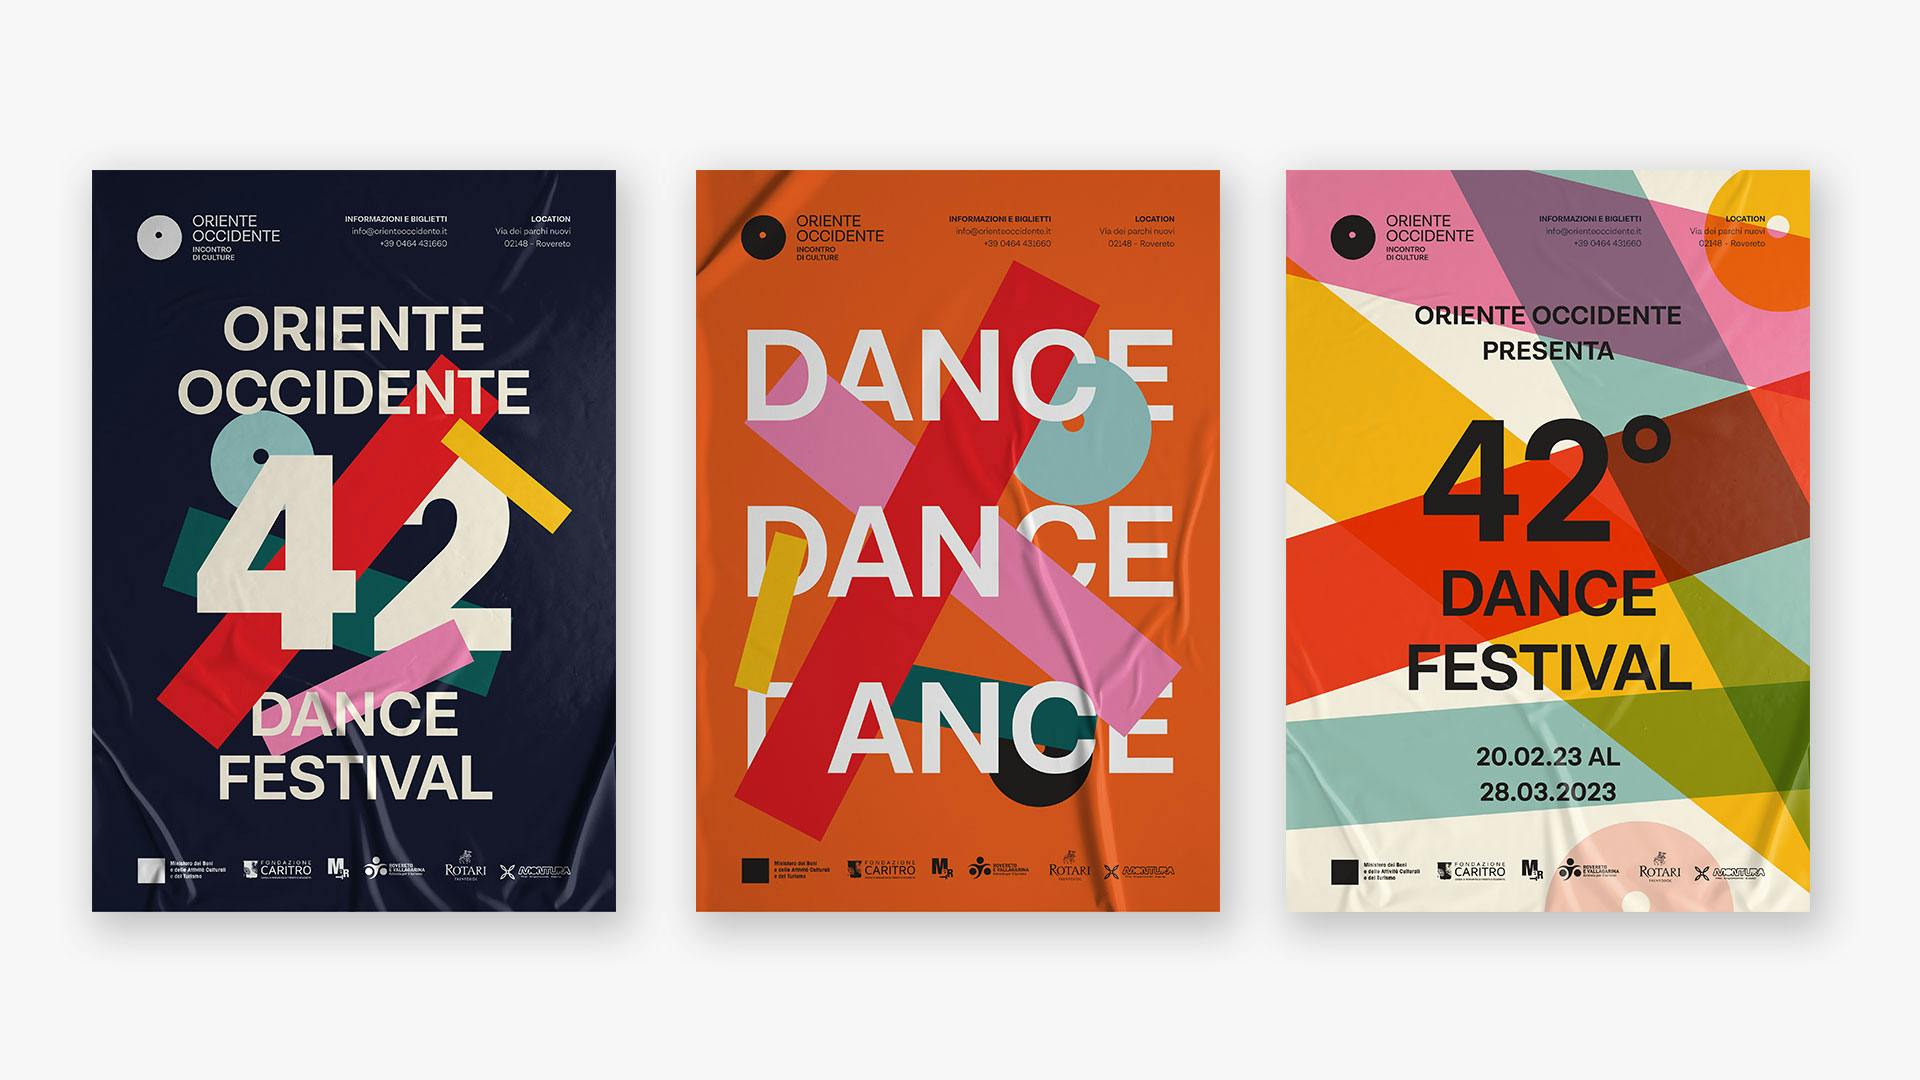 tre tipologie di poster in differenti colori